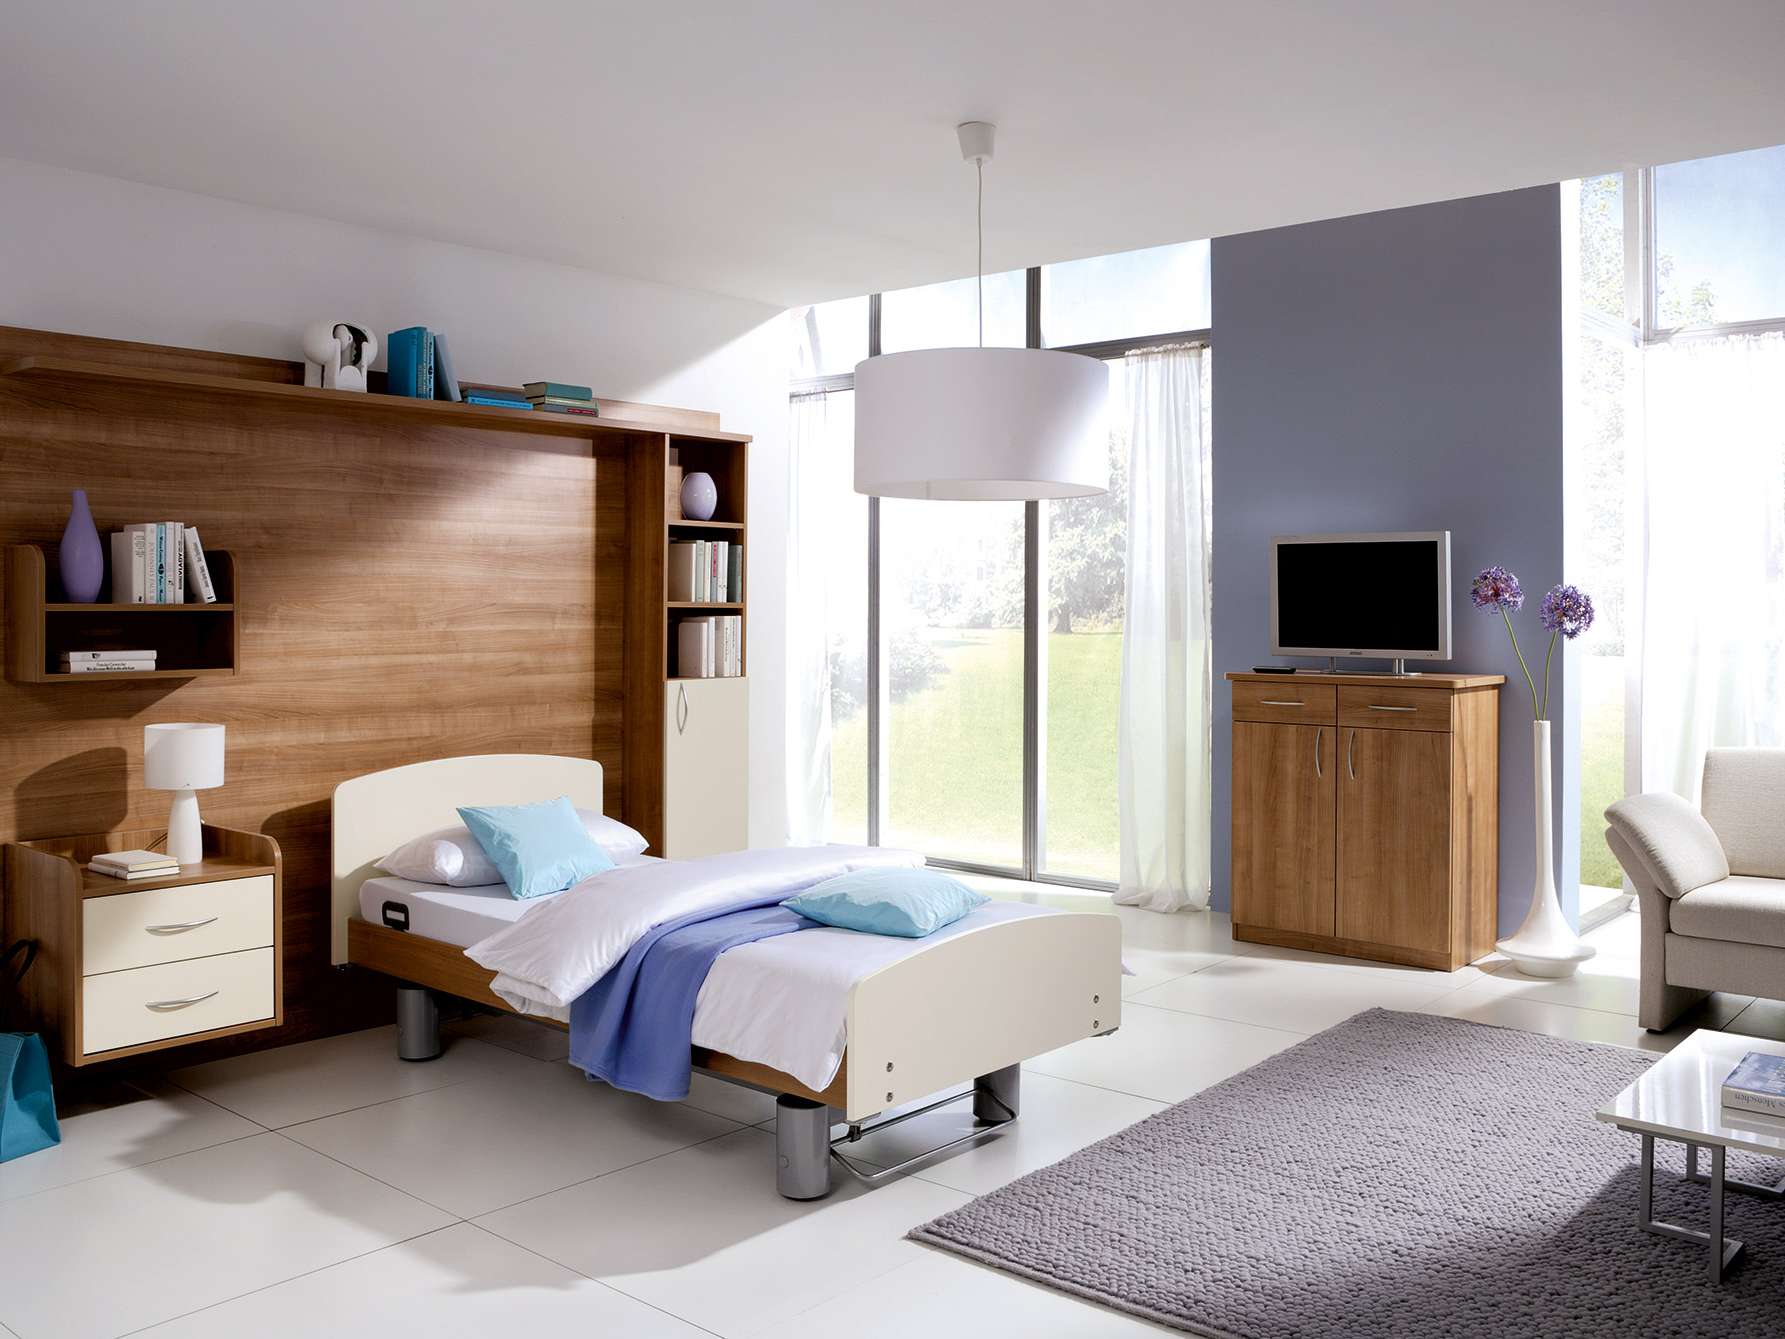 Wohnliche Dekor-Kombinationen mit dem Möbelprogramm Adrano